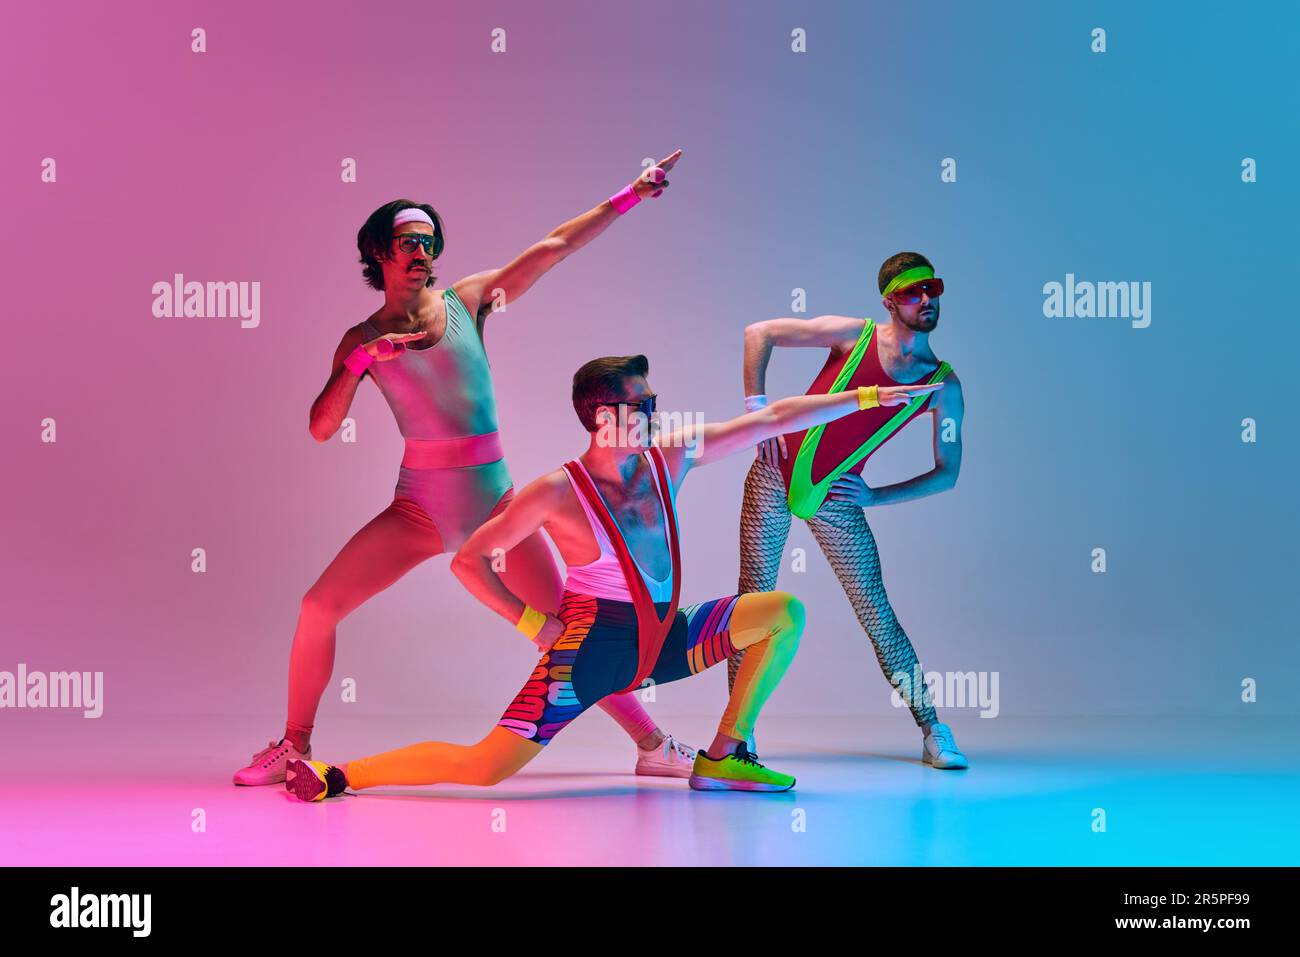 Lustiges Bild von drei Männern in stilvoller, klassischer Sportbekleidung,  Aerobic und Gymnastik vor einem gradientenblauen, rosa Studiohintergrund  Stockfotografie - Alamy